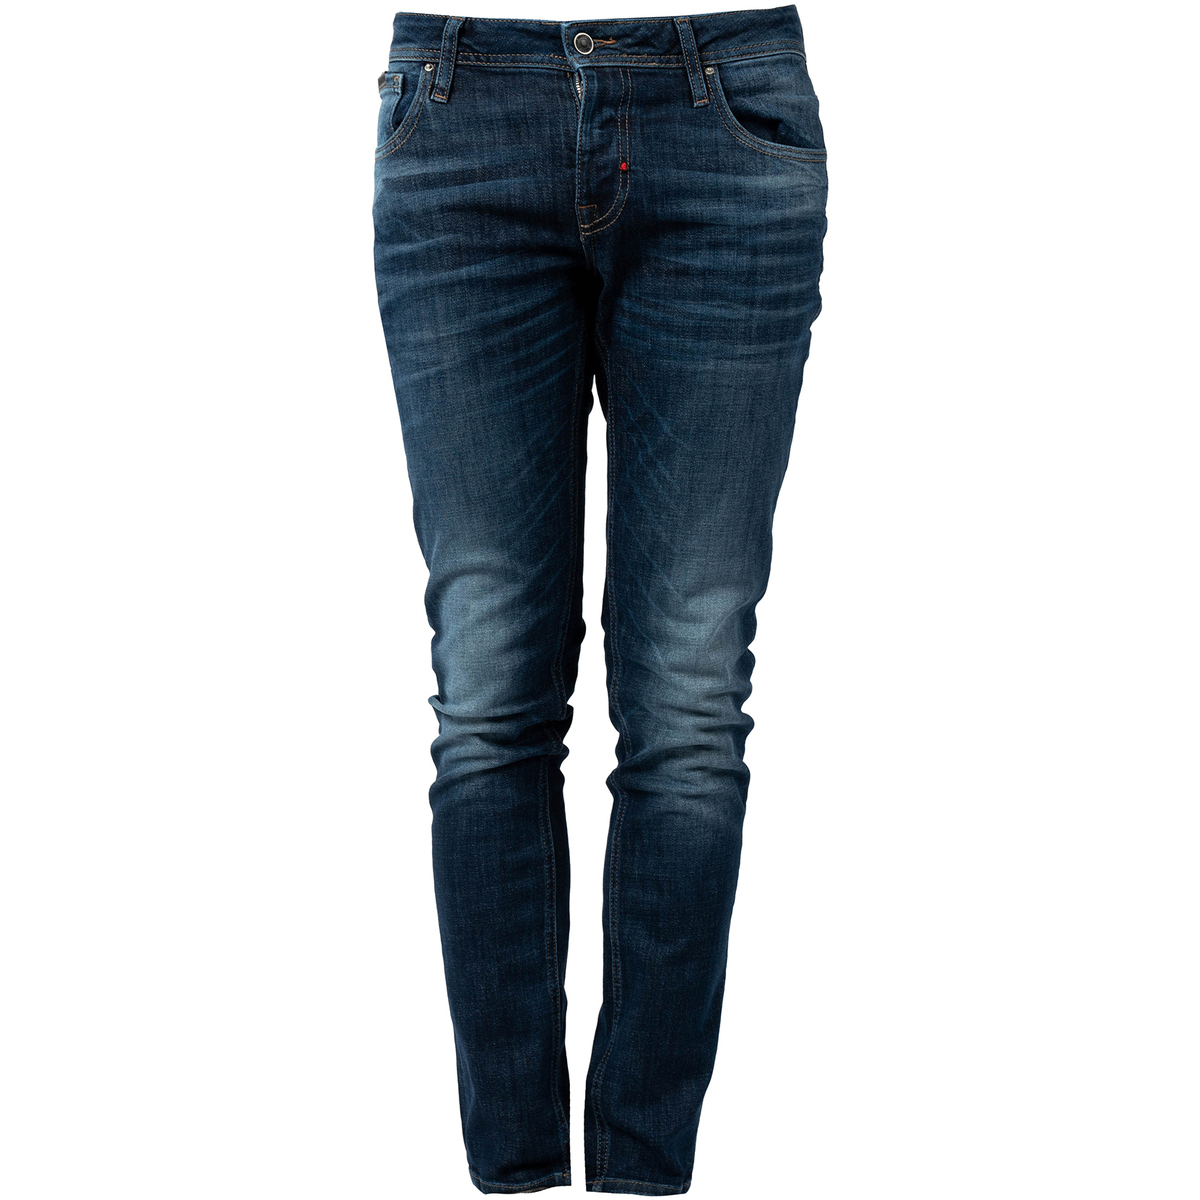 Vêtements Homme Pantalons 5 poches Antony Morato MMDT00241-FA750240 | Ozzy Bleu